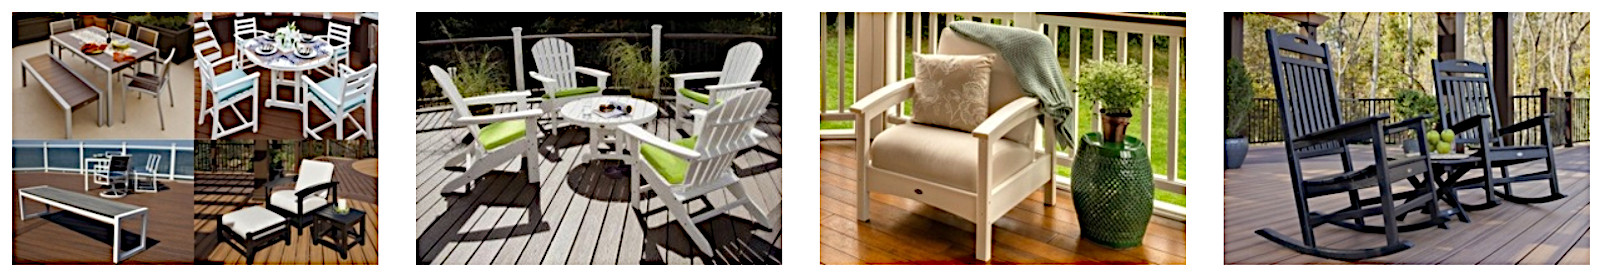 Distinct Trex outdoor furniture